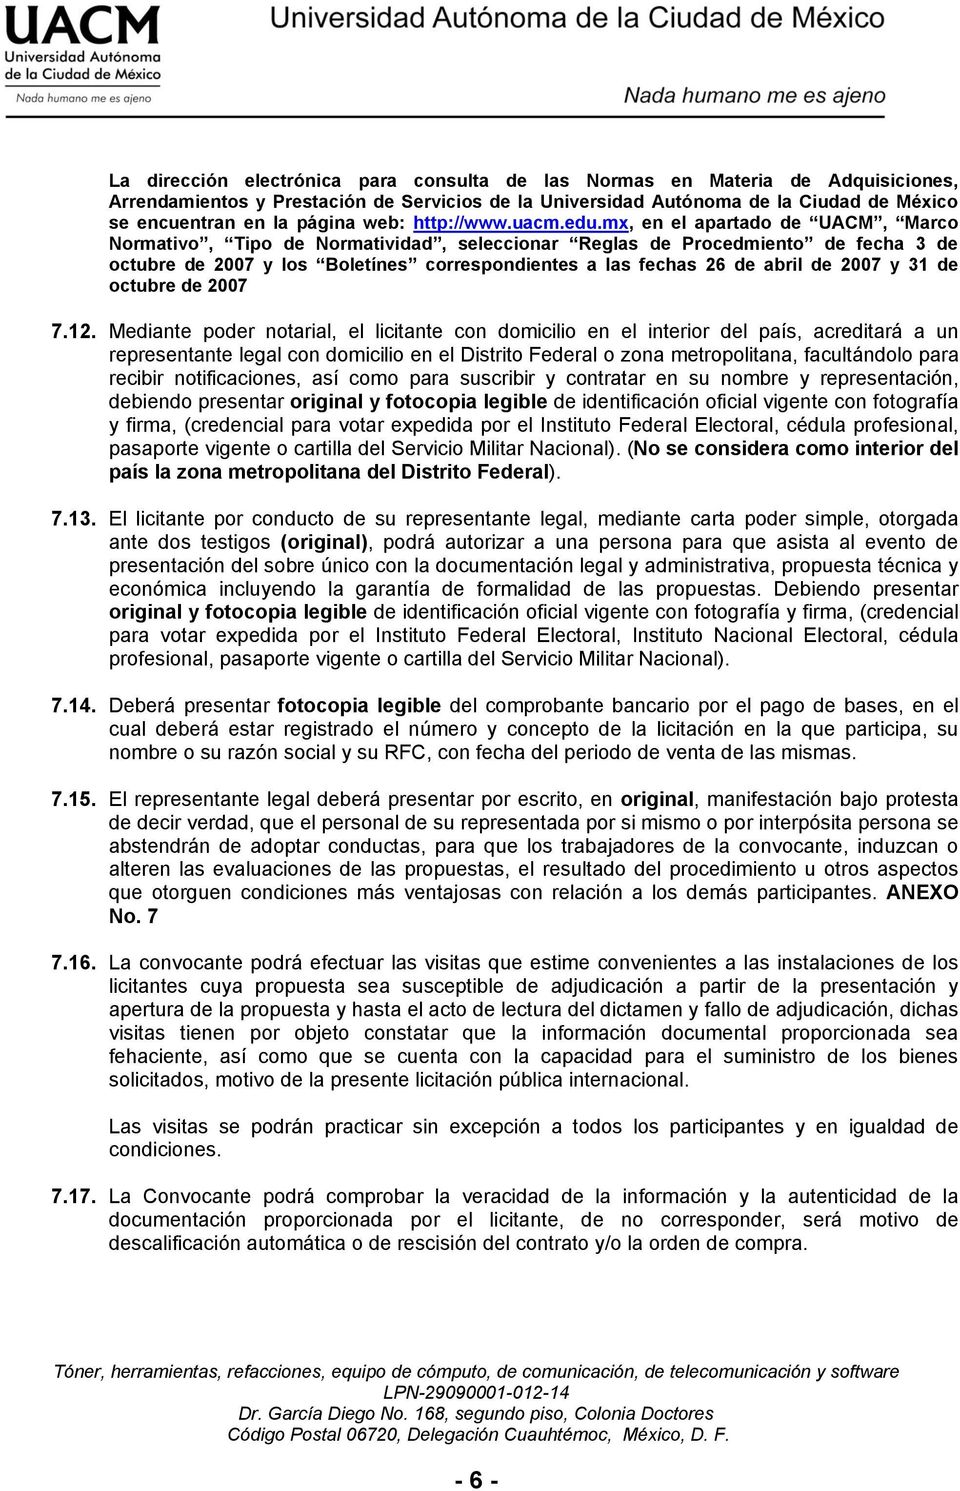 mx, en el apartado de UACM, Marco Normativo, Tipo de Normatividad, seleccionar Reglas de Procedmiento de fecha 3 de octubre de 2007 y los Boletínes correspondientes a las fechas 26 de abril de 2007 y